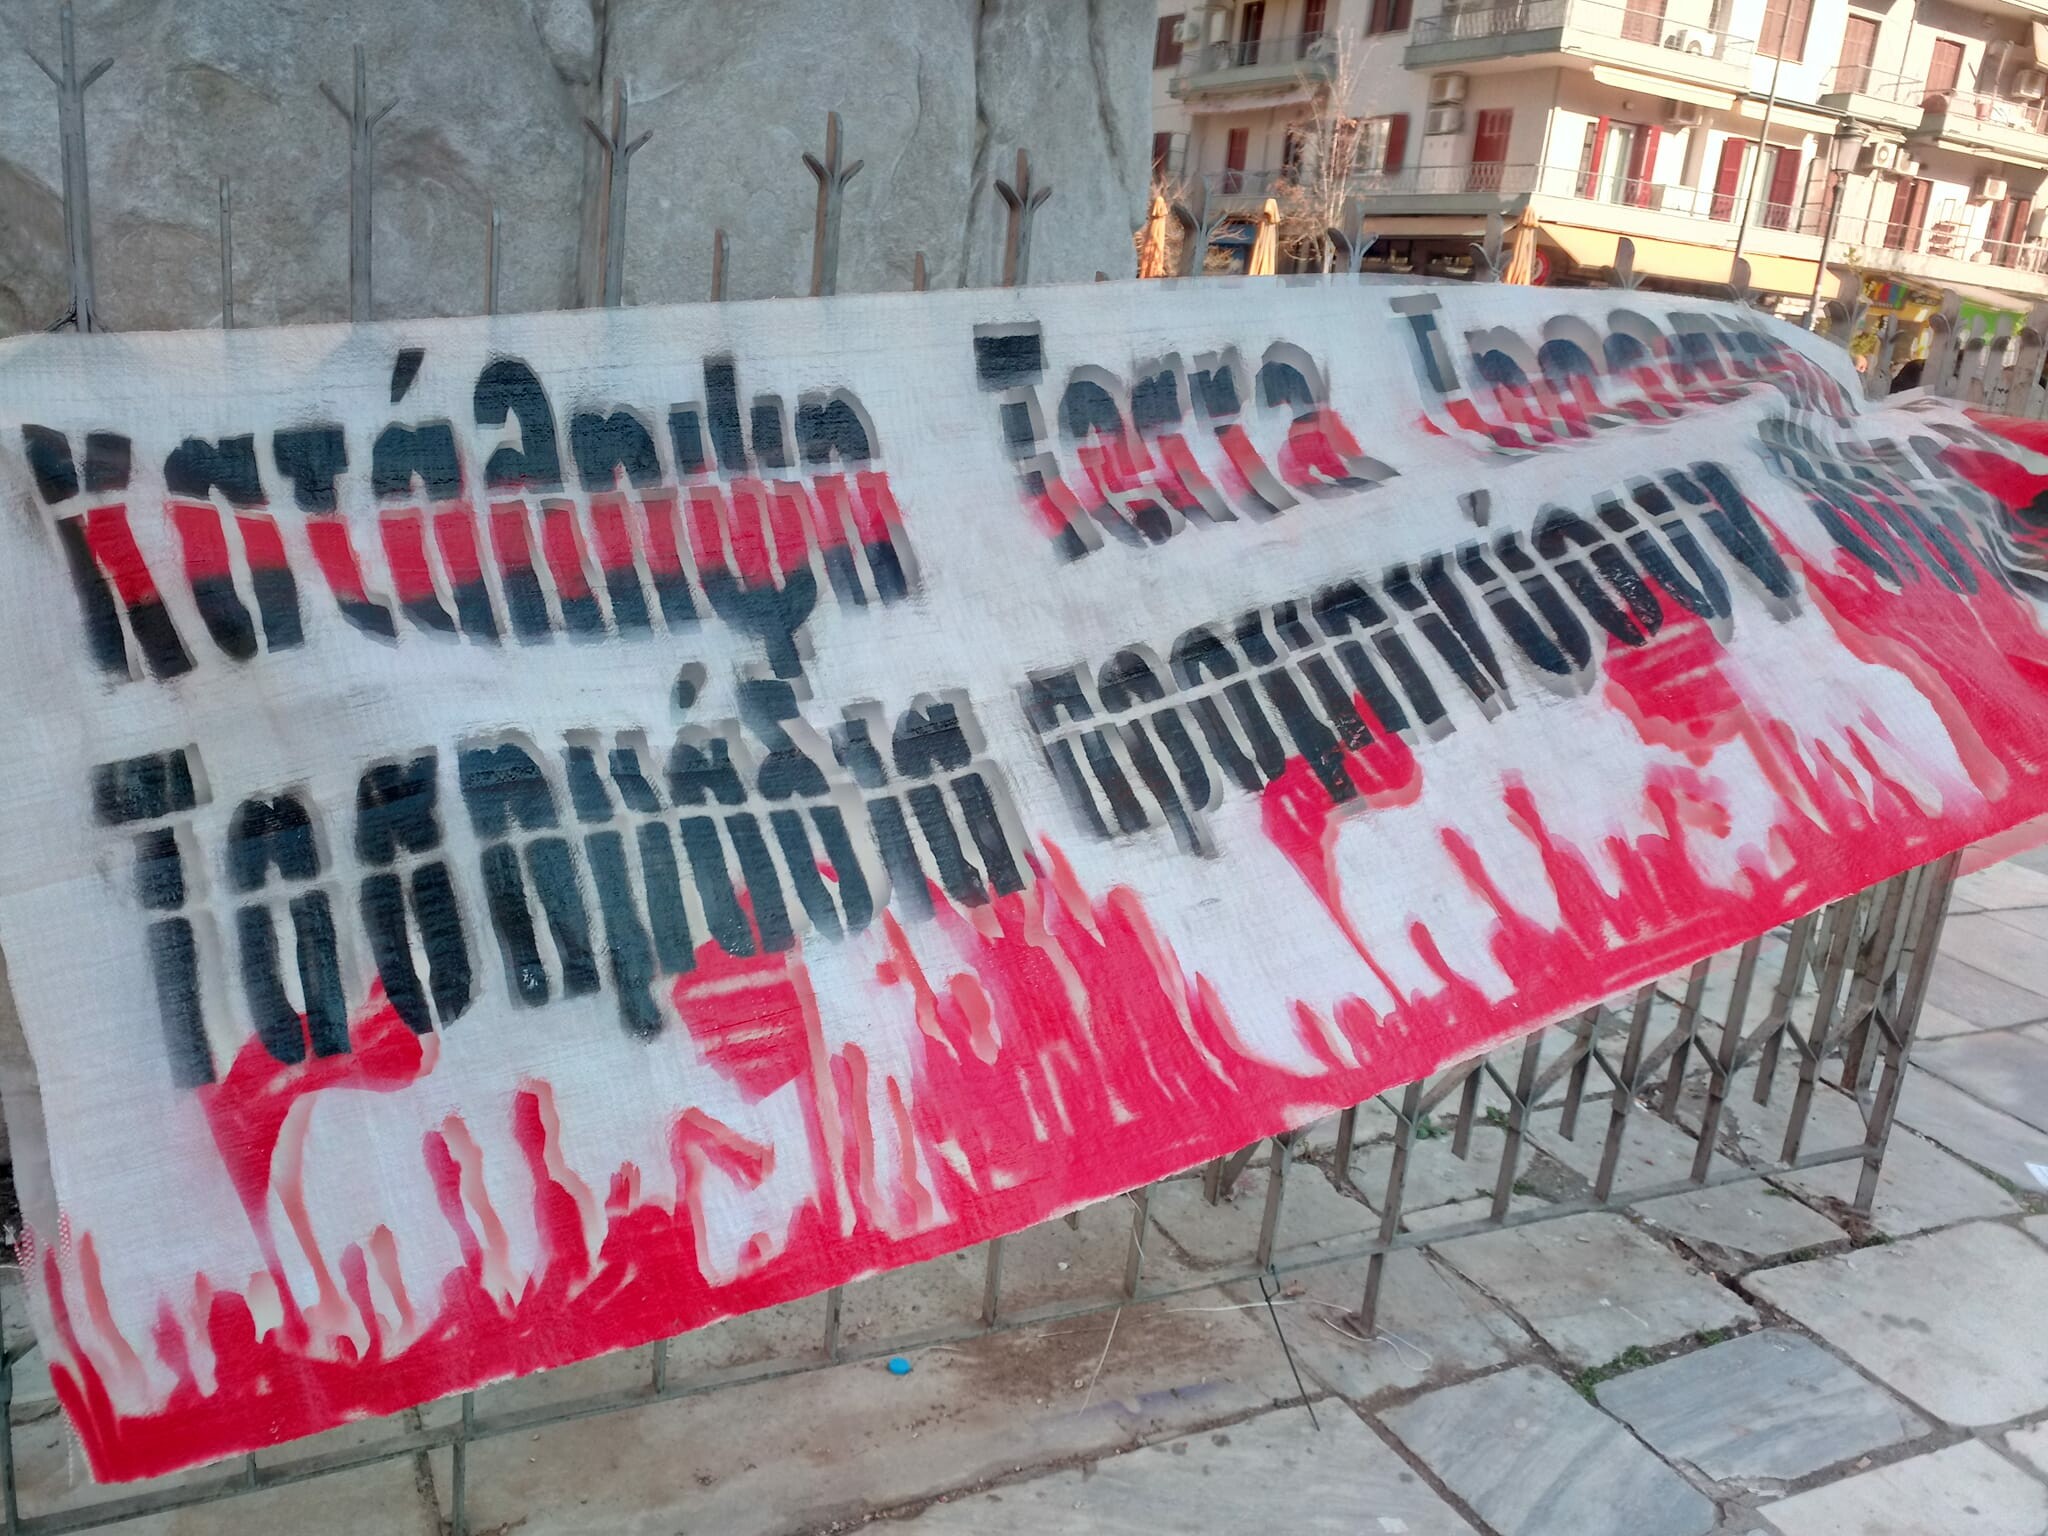 Συγκέντρωση αλληλεγγύης στους συλληφθέντες-ίσσες της πανελλαδικής πορείας (16/1 στις 10:00, Δικαστήρια Θεσσαλονίκης). Τις τελευταίες [...]